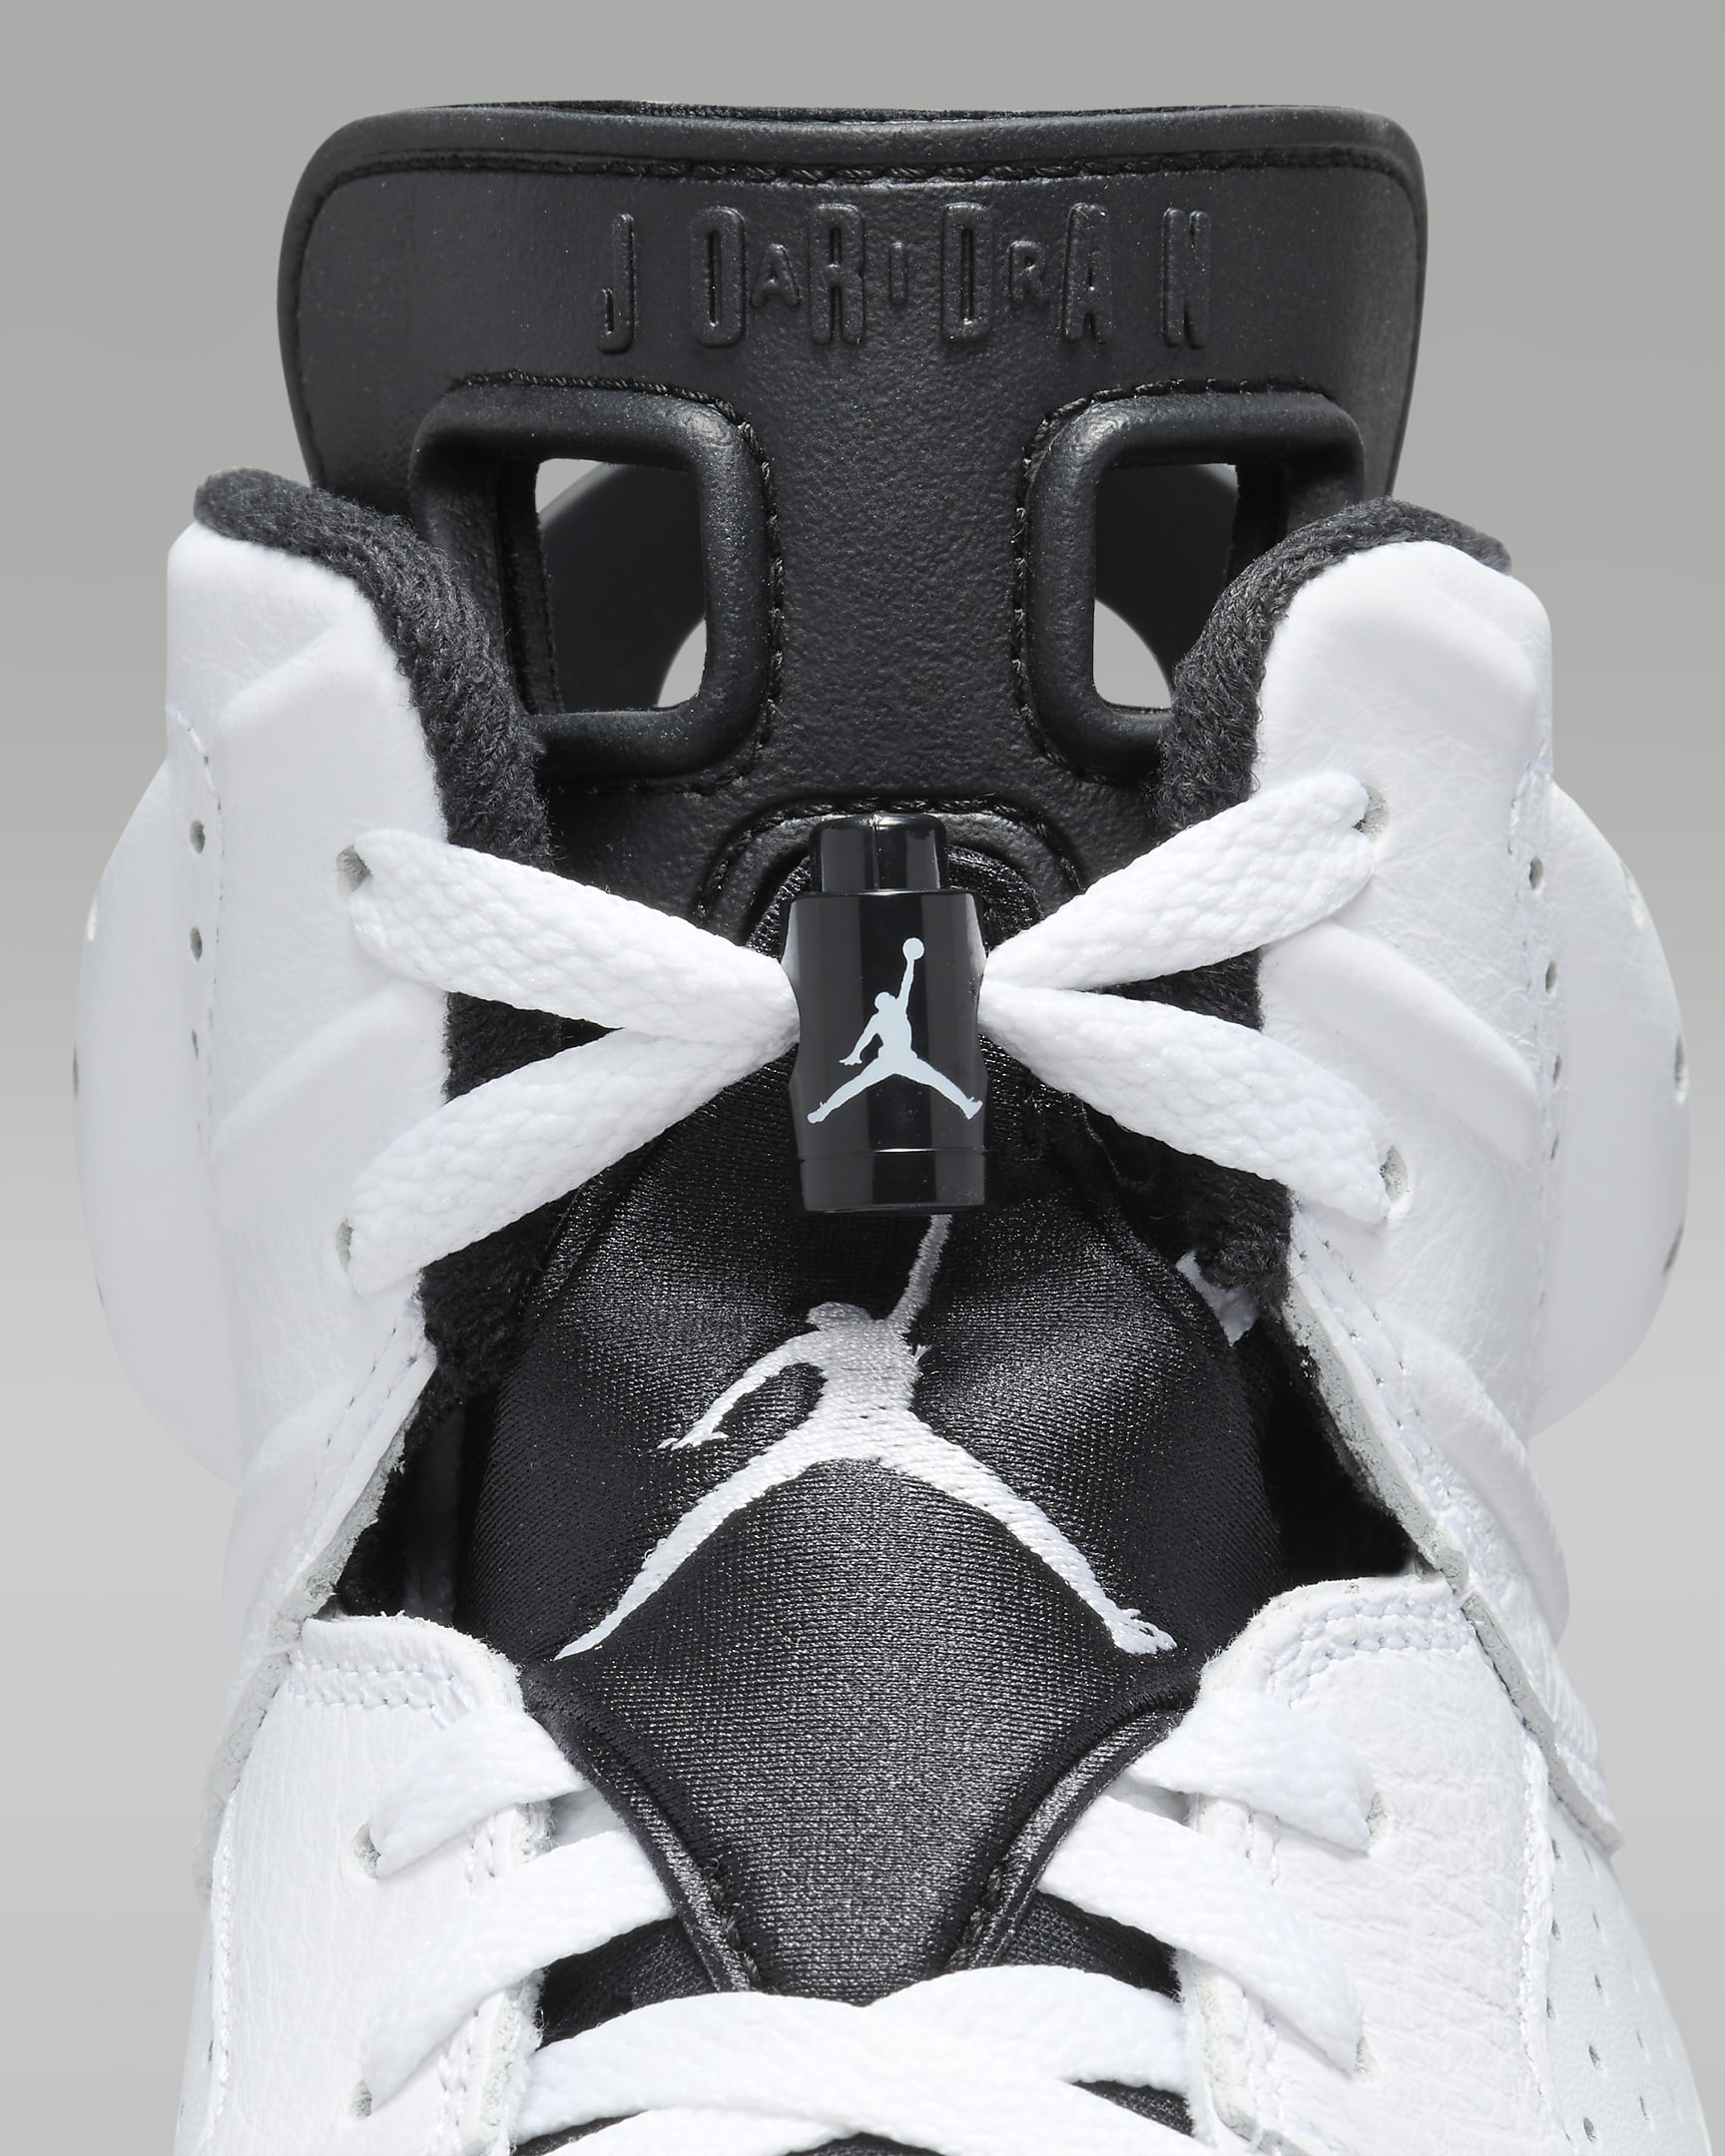 Air Jordan 6 Retro 'White/Black' Men's Shoes - White/Black